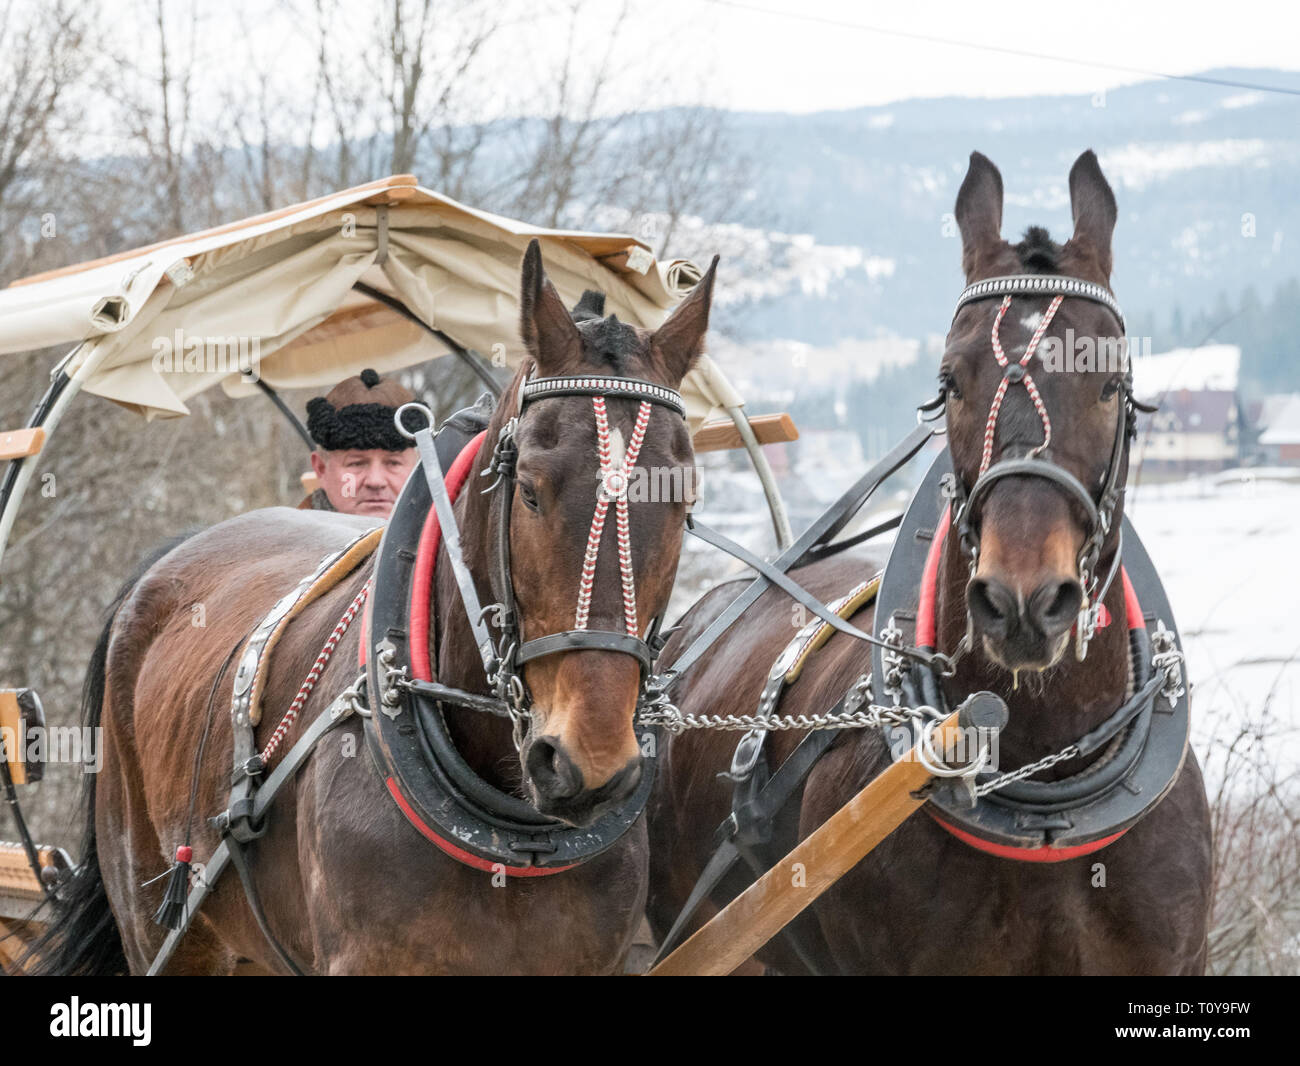 Deux chevaux tirant une charrette, Rusiński Wierch, Bukowina Tatrzańska, le sud de la Pologne Banque D'Images